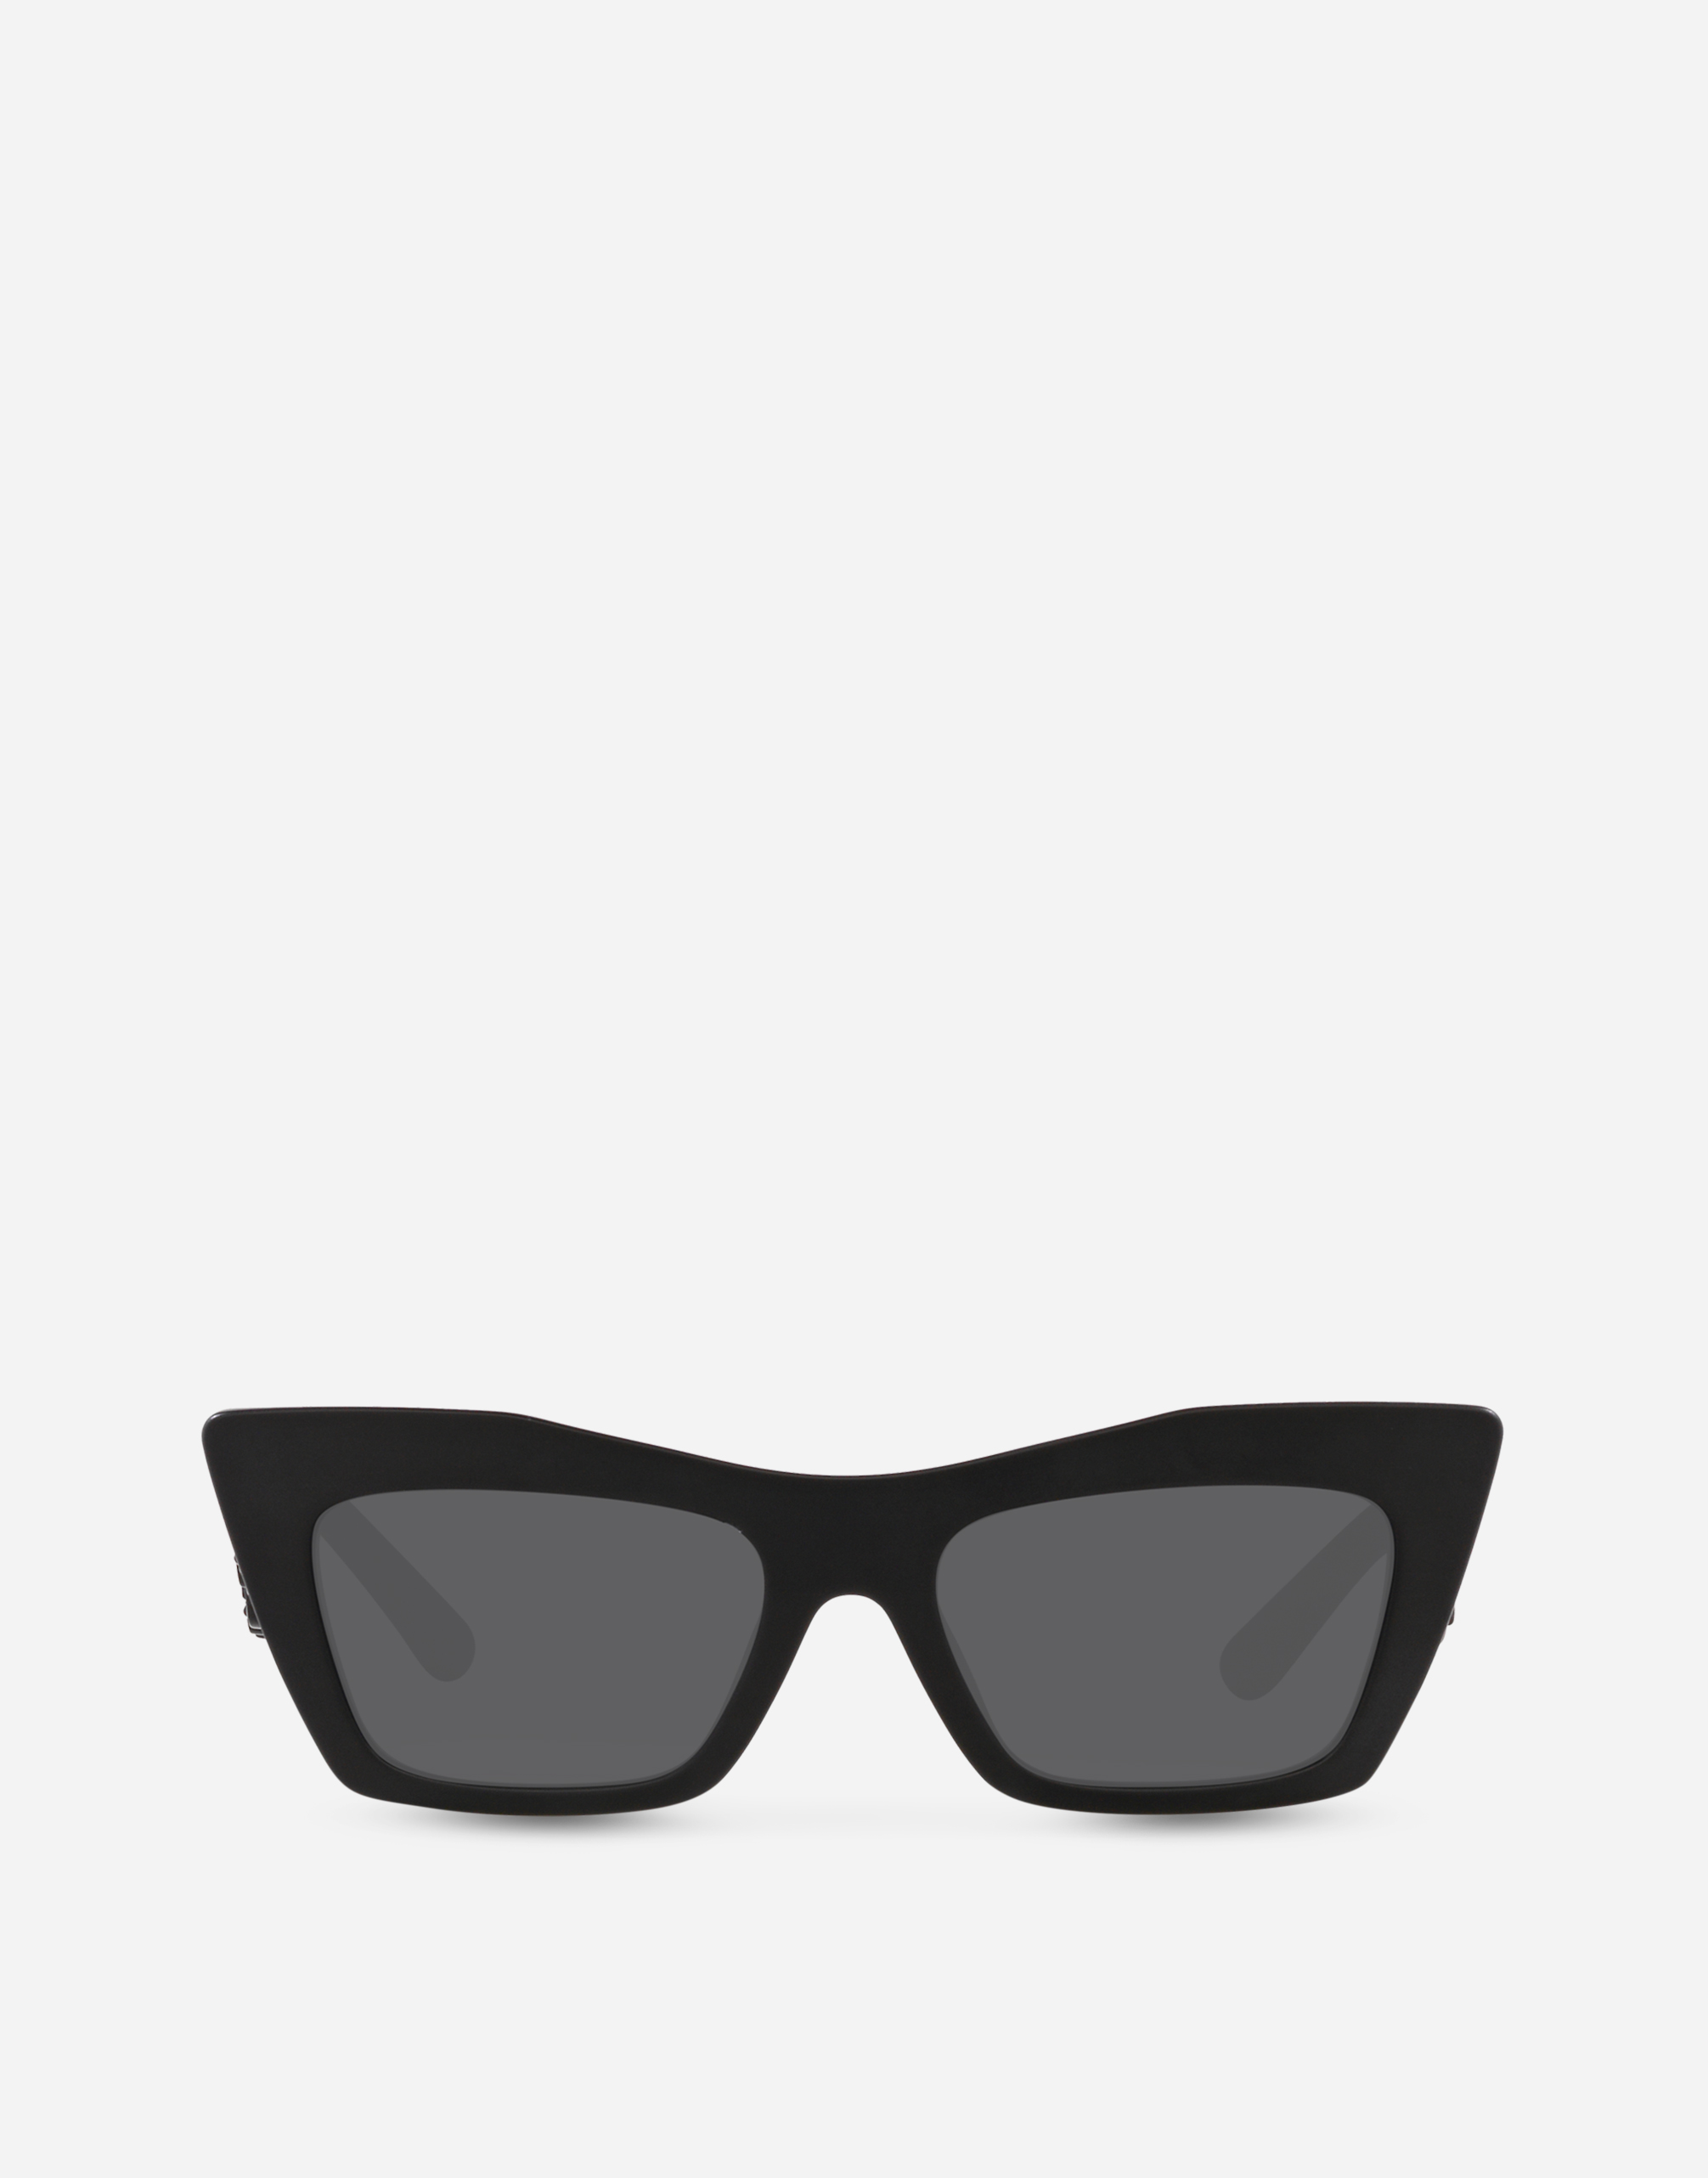 DG Barocco Sunglasses in Black matte